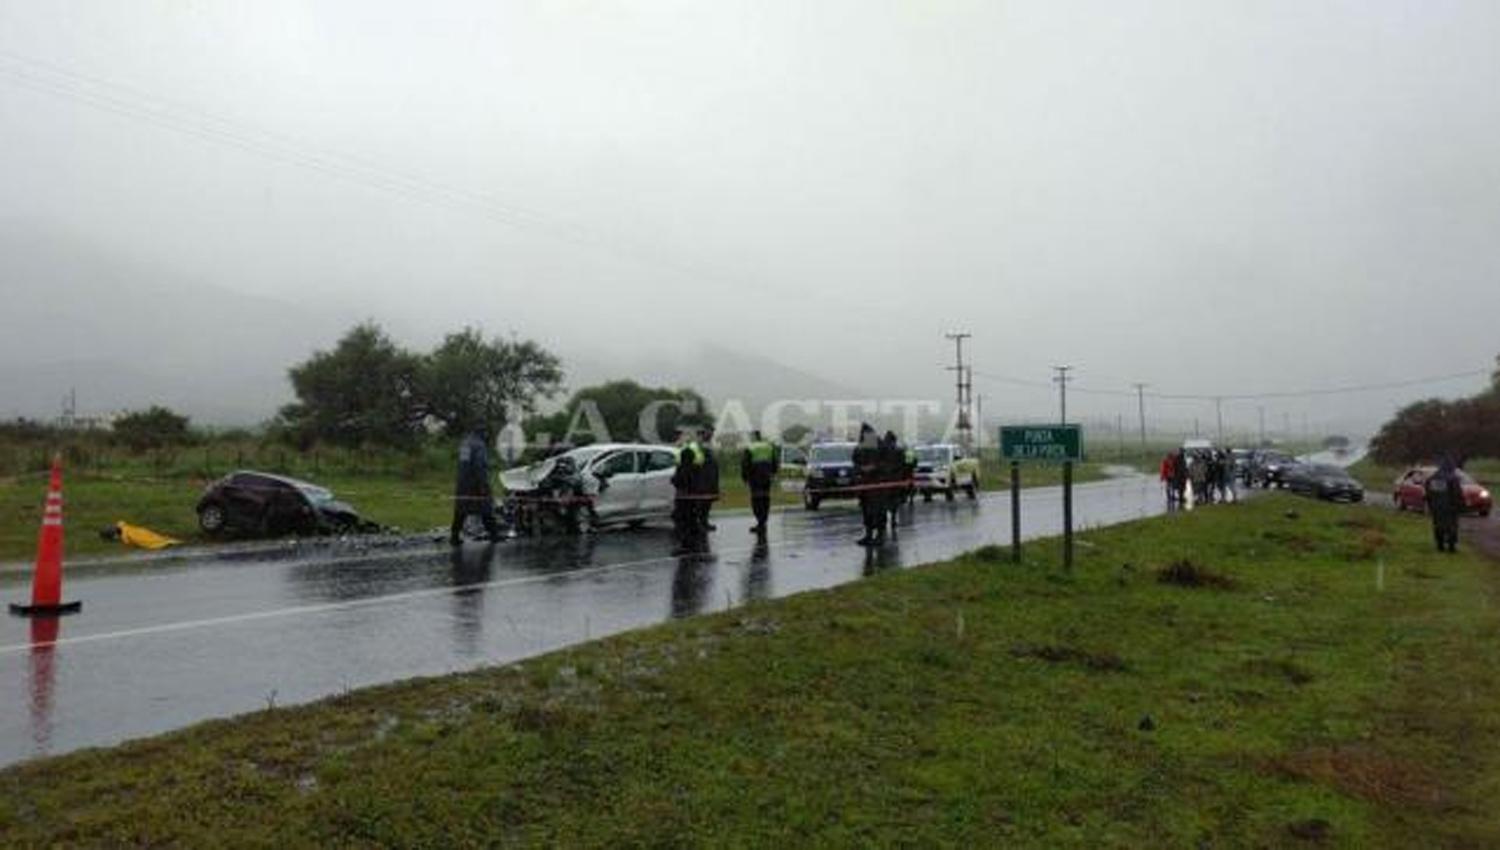 TERRIBLE IMPACTO. Los vehículos chocaron de frente a la altura del kilómetro 56, de la ruta provincial 307. la gaceta / foto de juan pablo sanchez noli